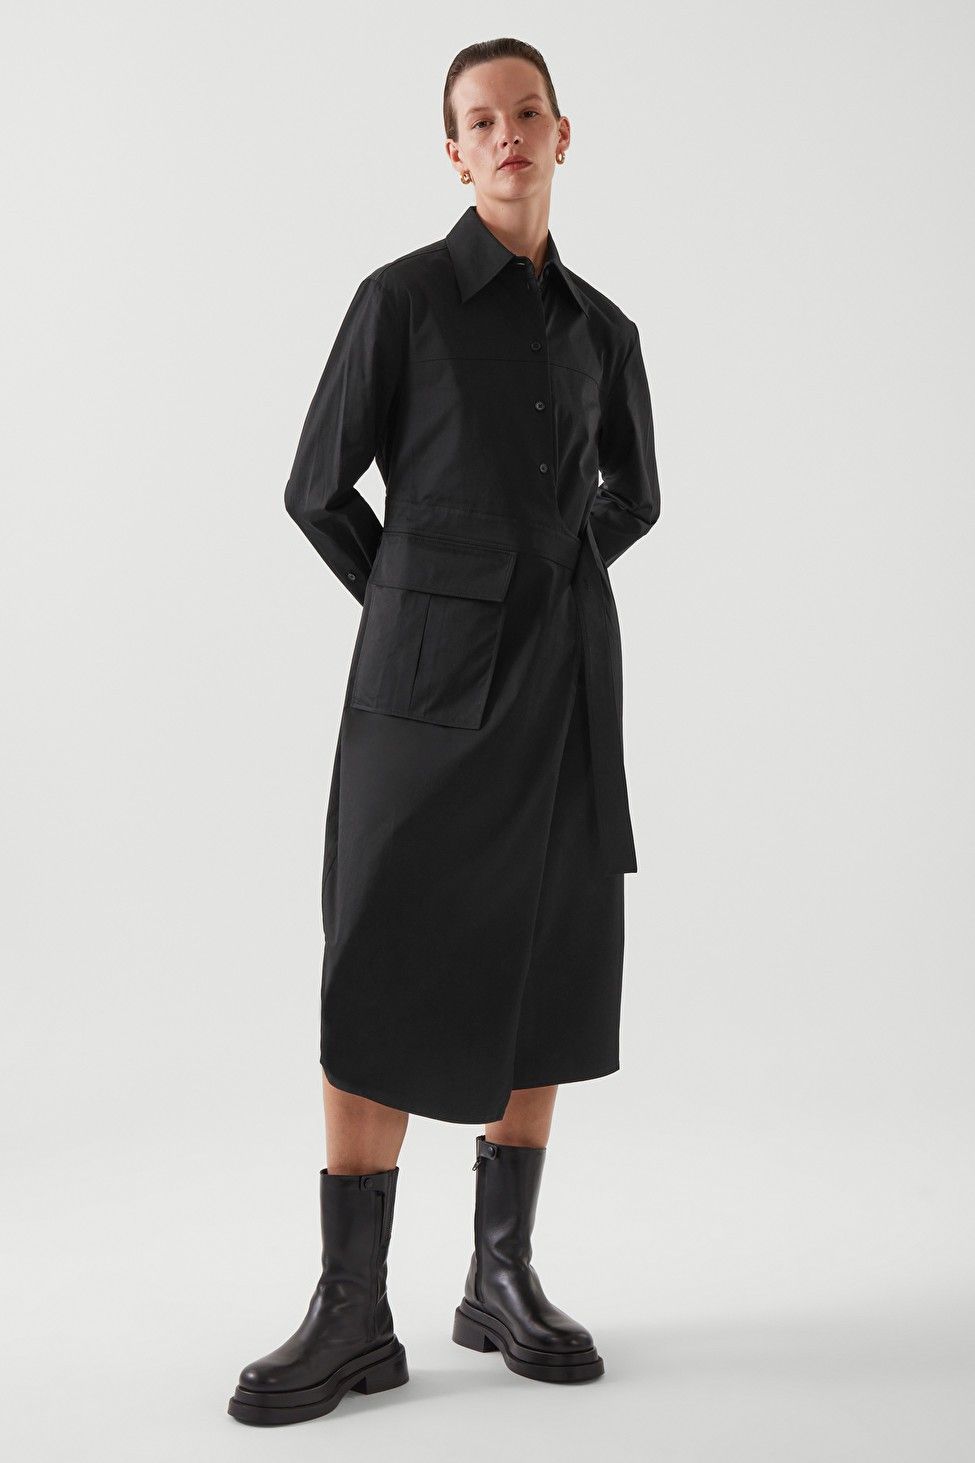 BELTED SHIRT DRESS Black Dress Black Dresses Spring Dress Work Wear Spring Outfits | COS (US)